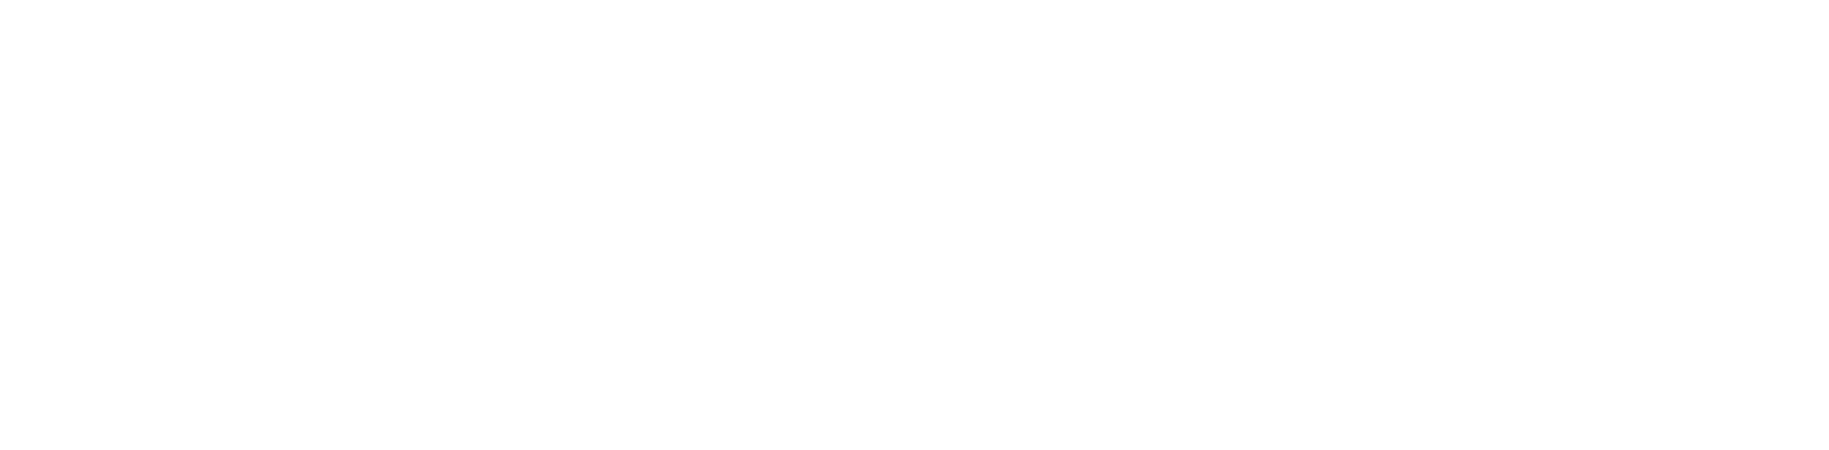 ftp-logo-8-copy.png